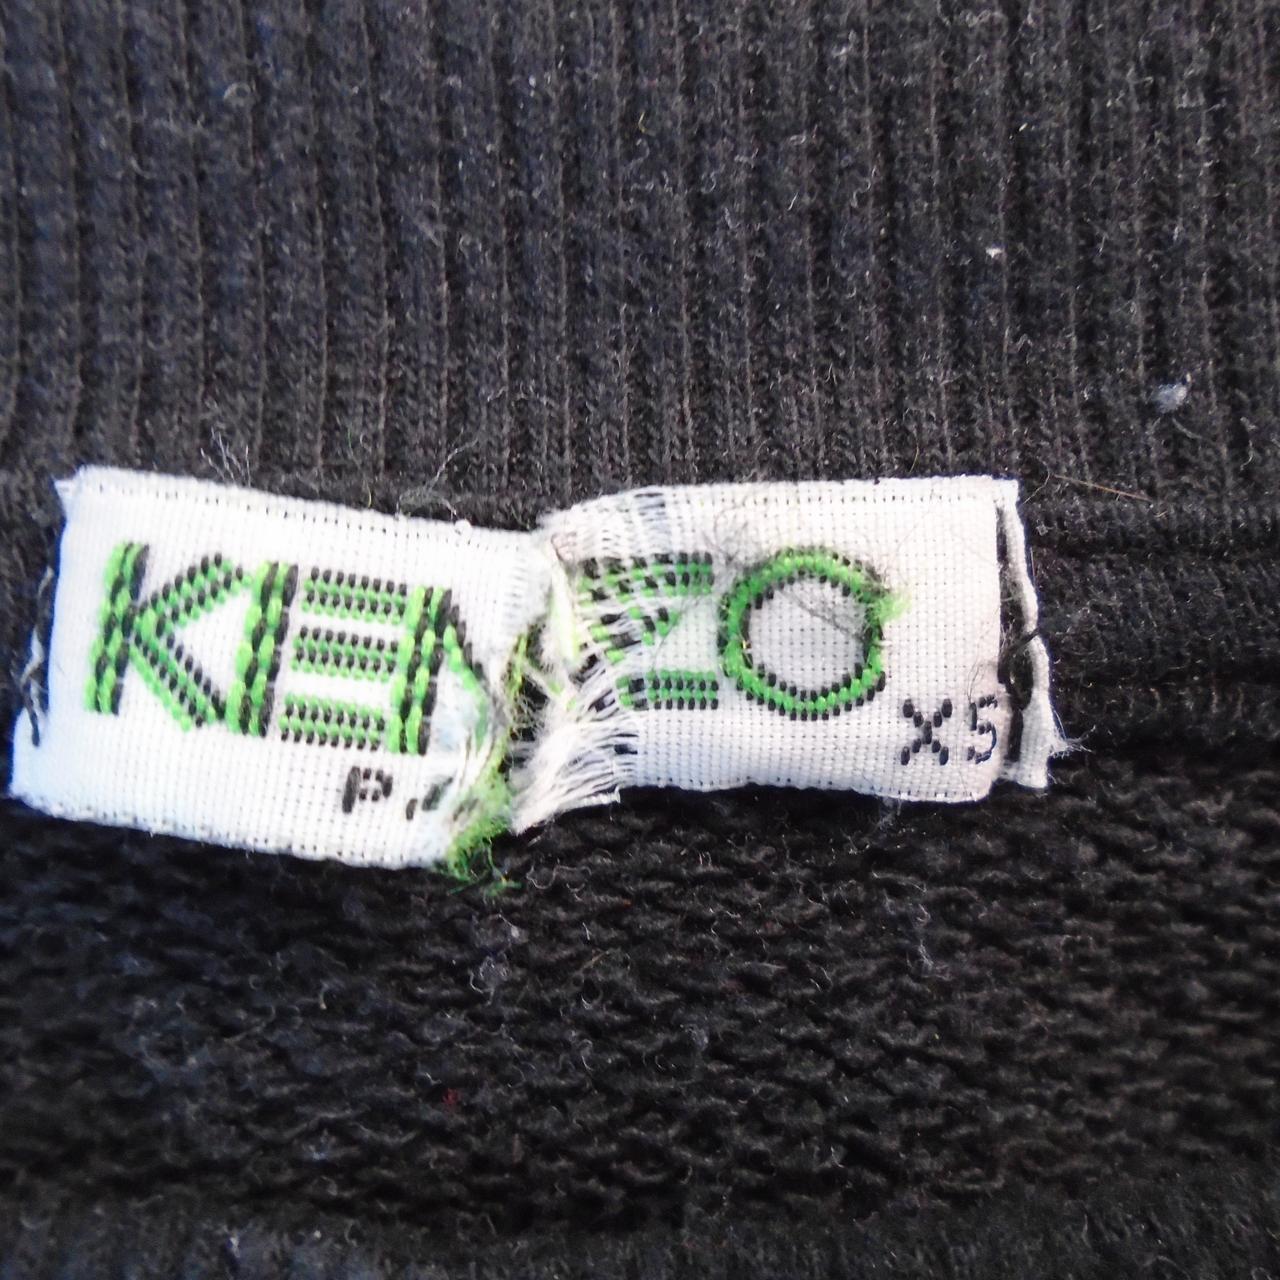 Women's Sweatshirt Kenzo. Black. XS. Used. Good